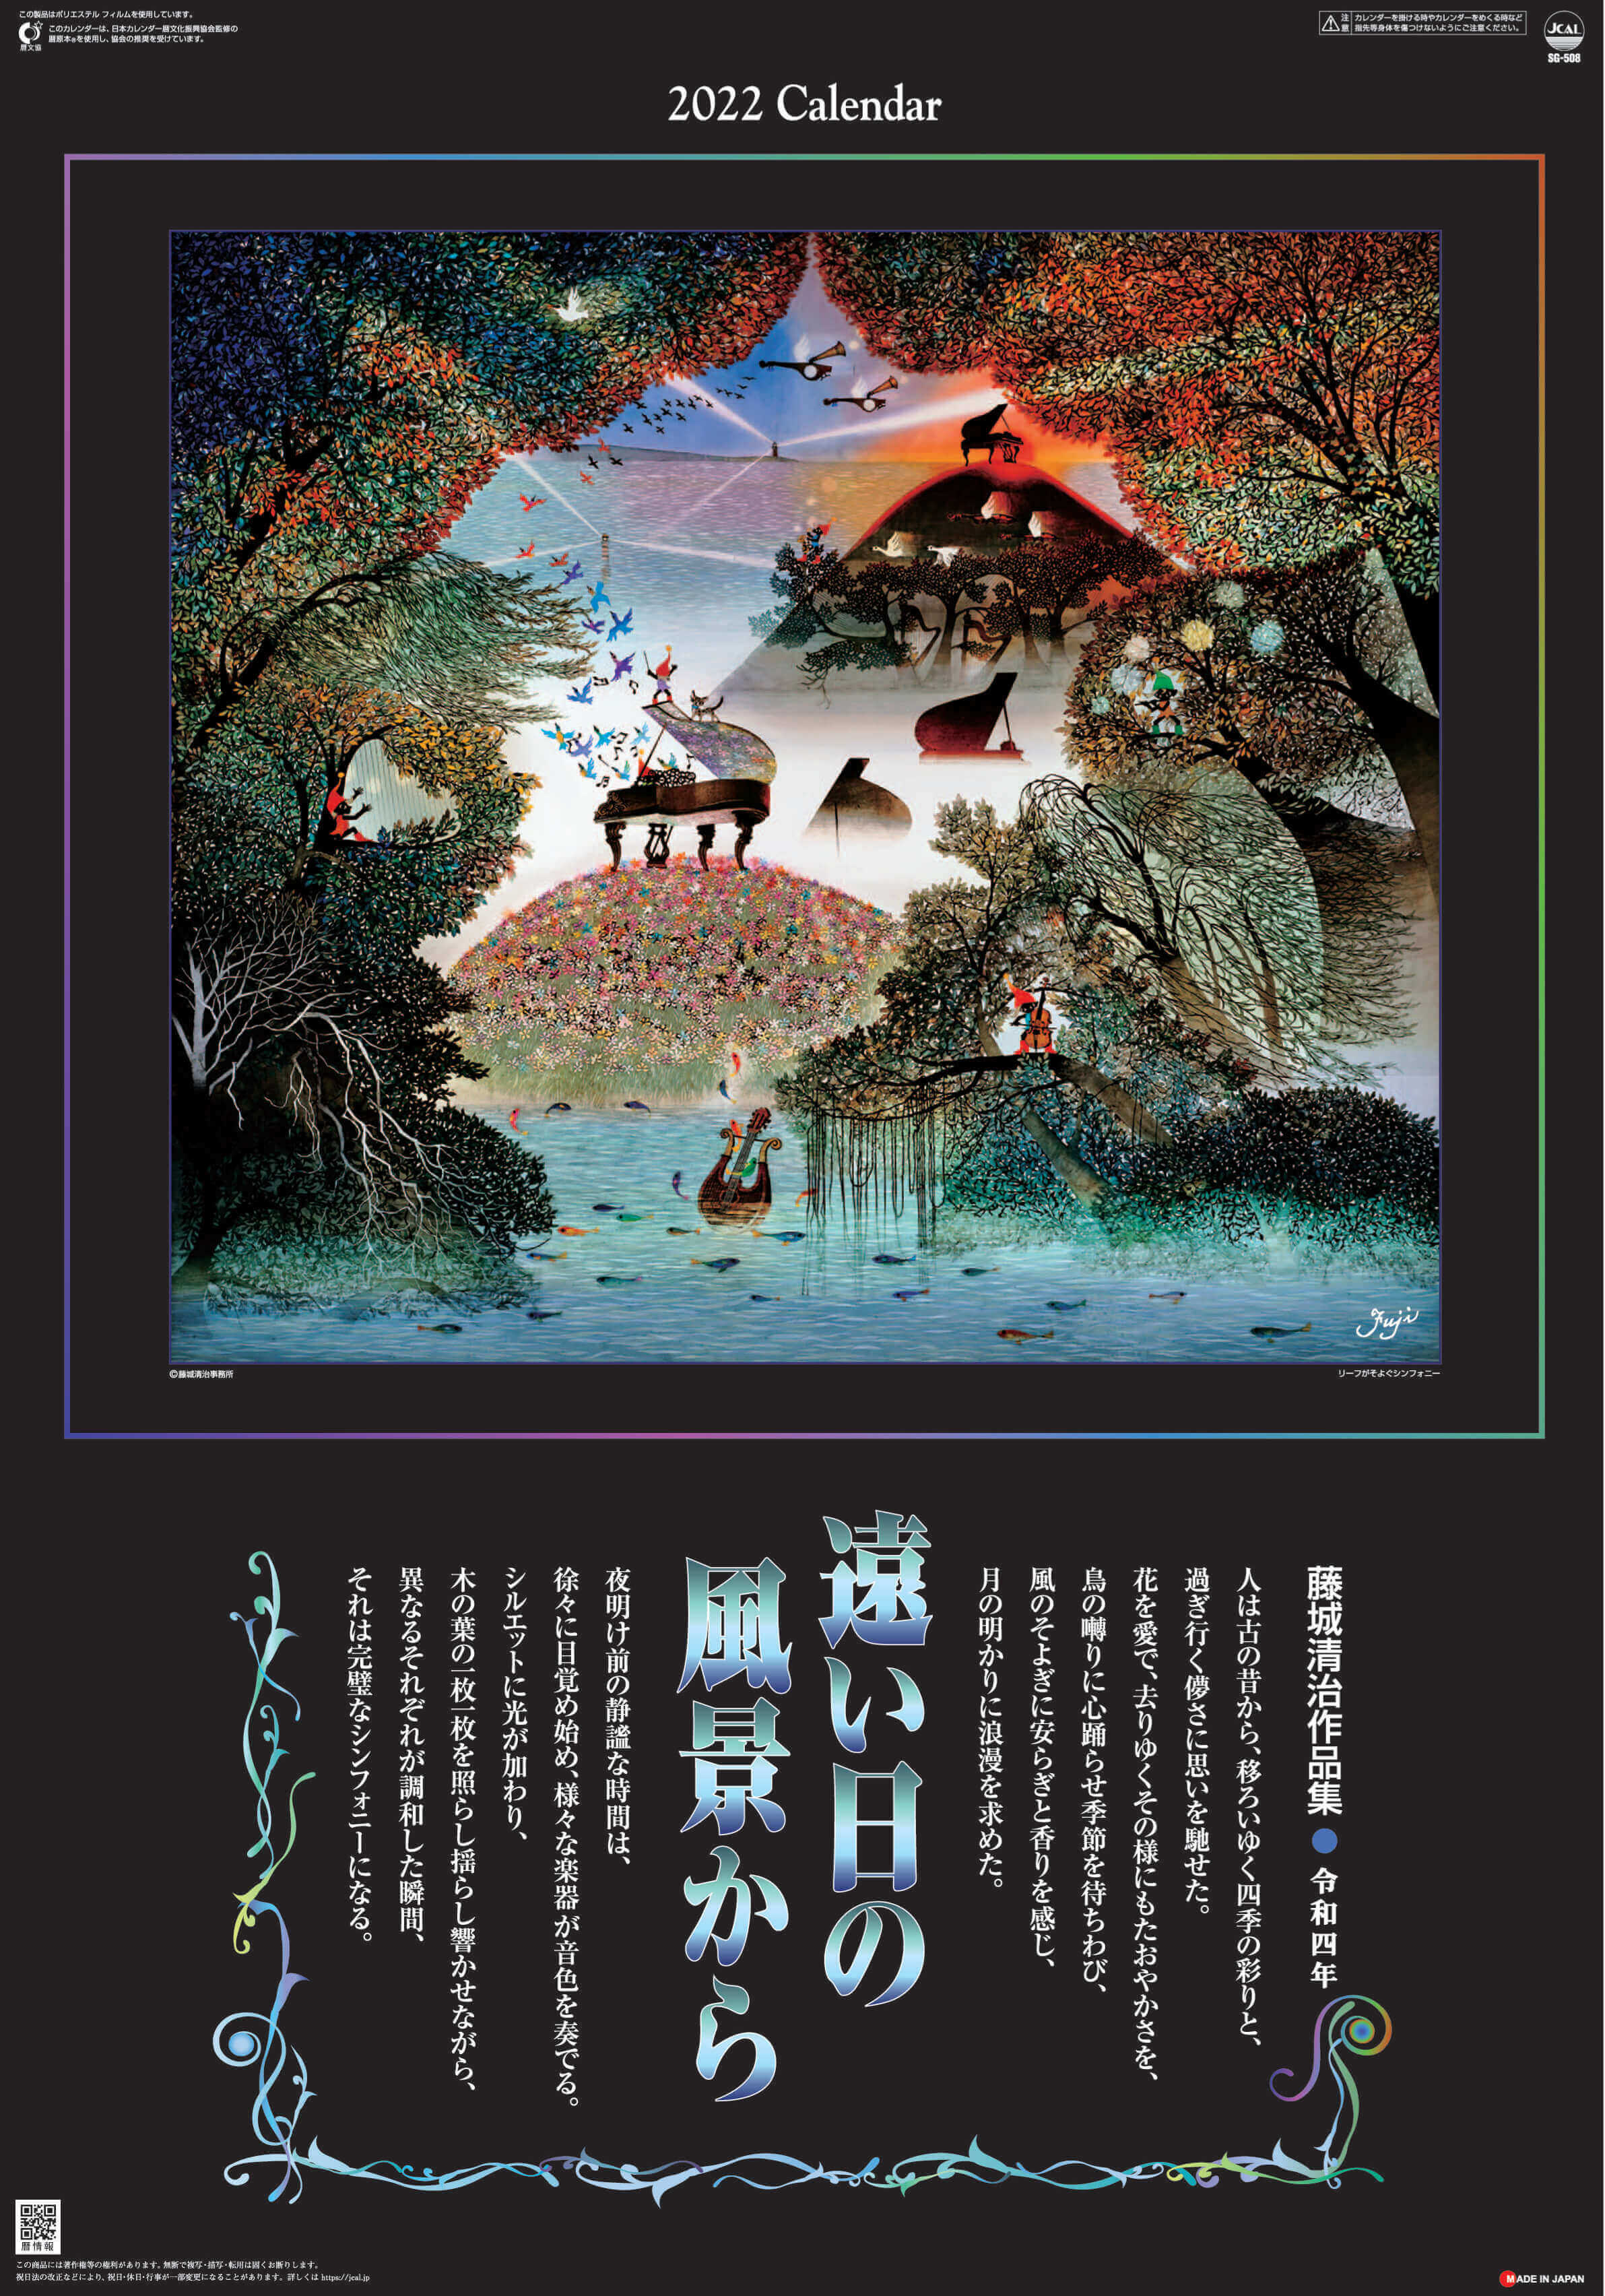  遠い日の風景から(影絵)(フィルムカレンダー) 藤城清治 2022年カレンダーの画像